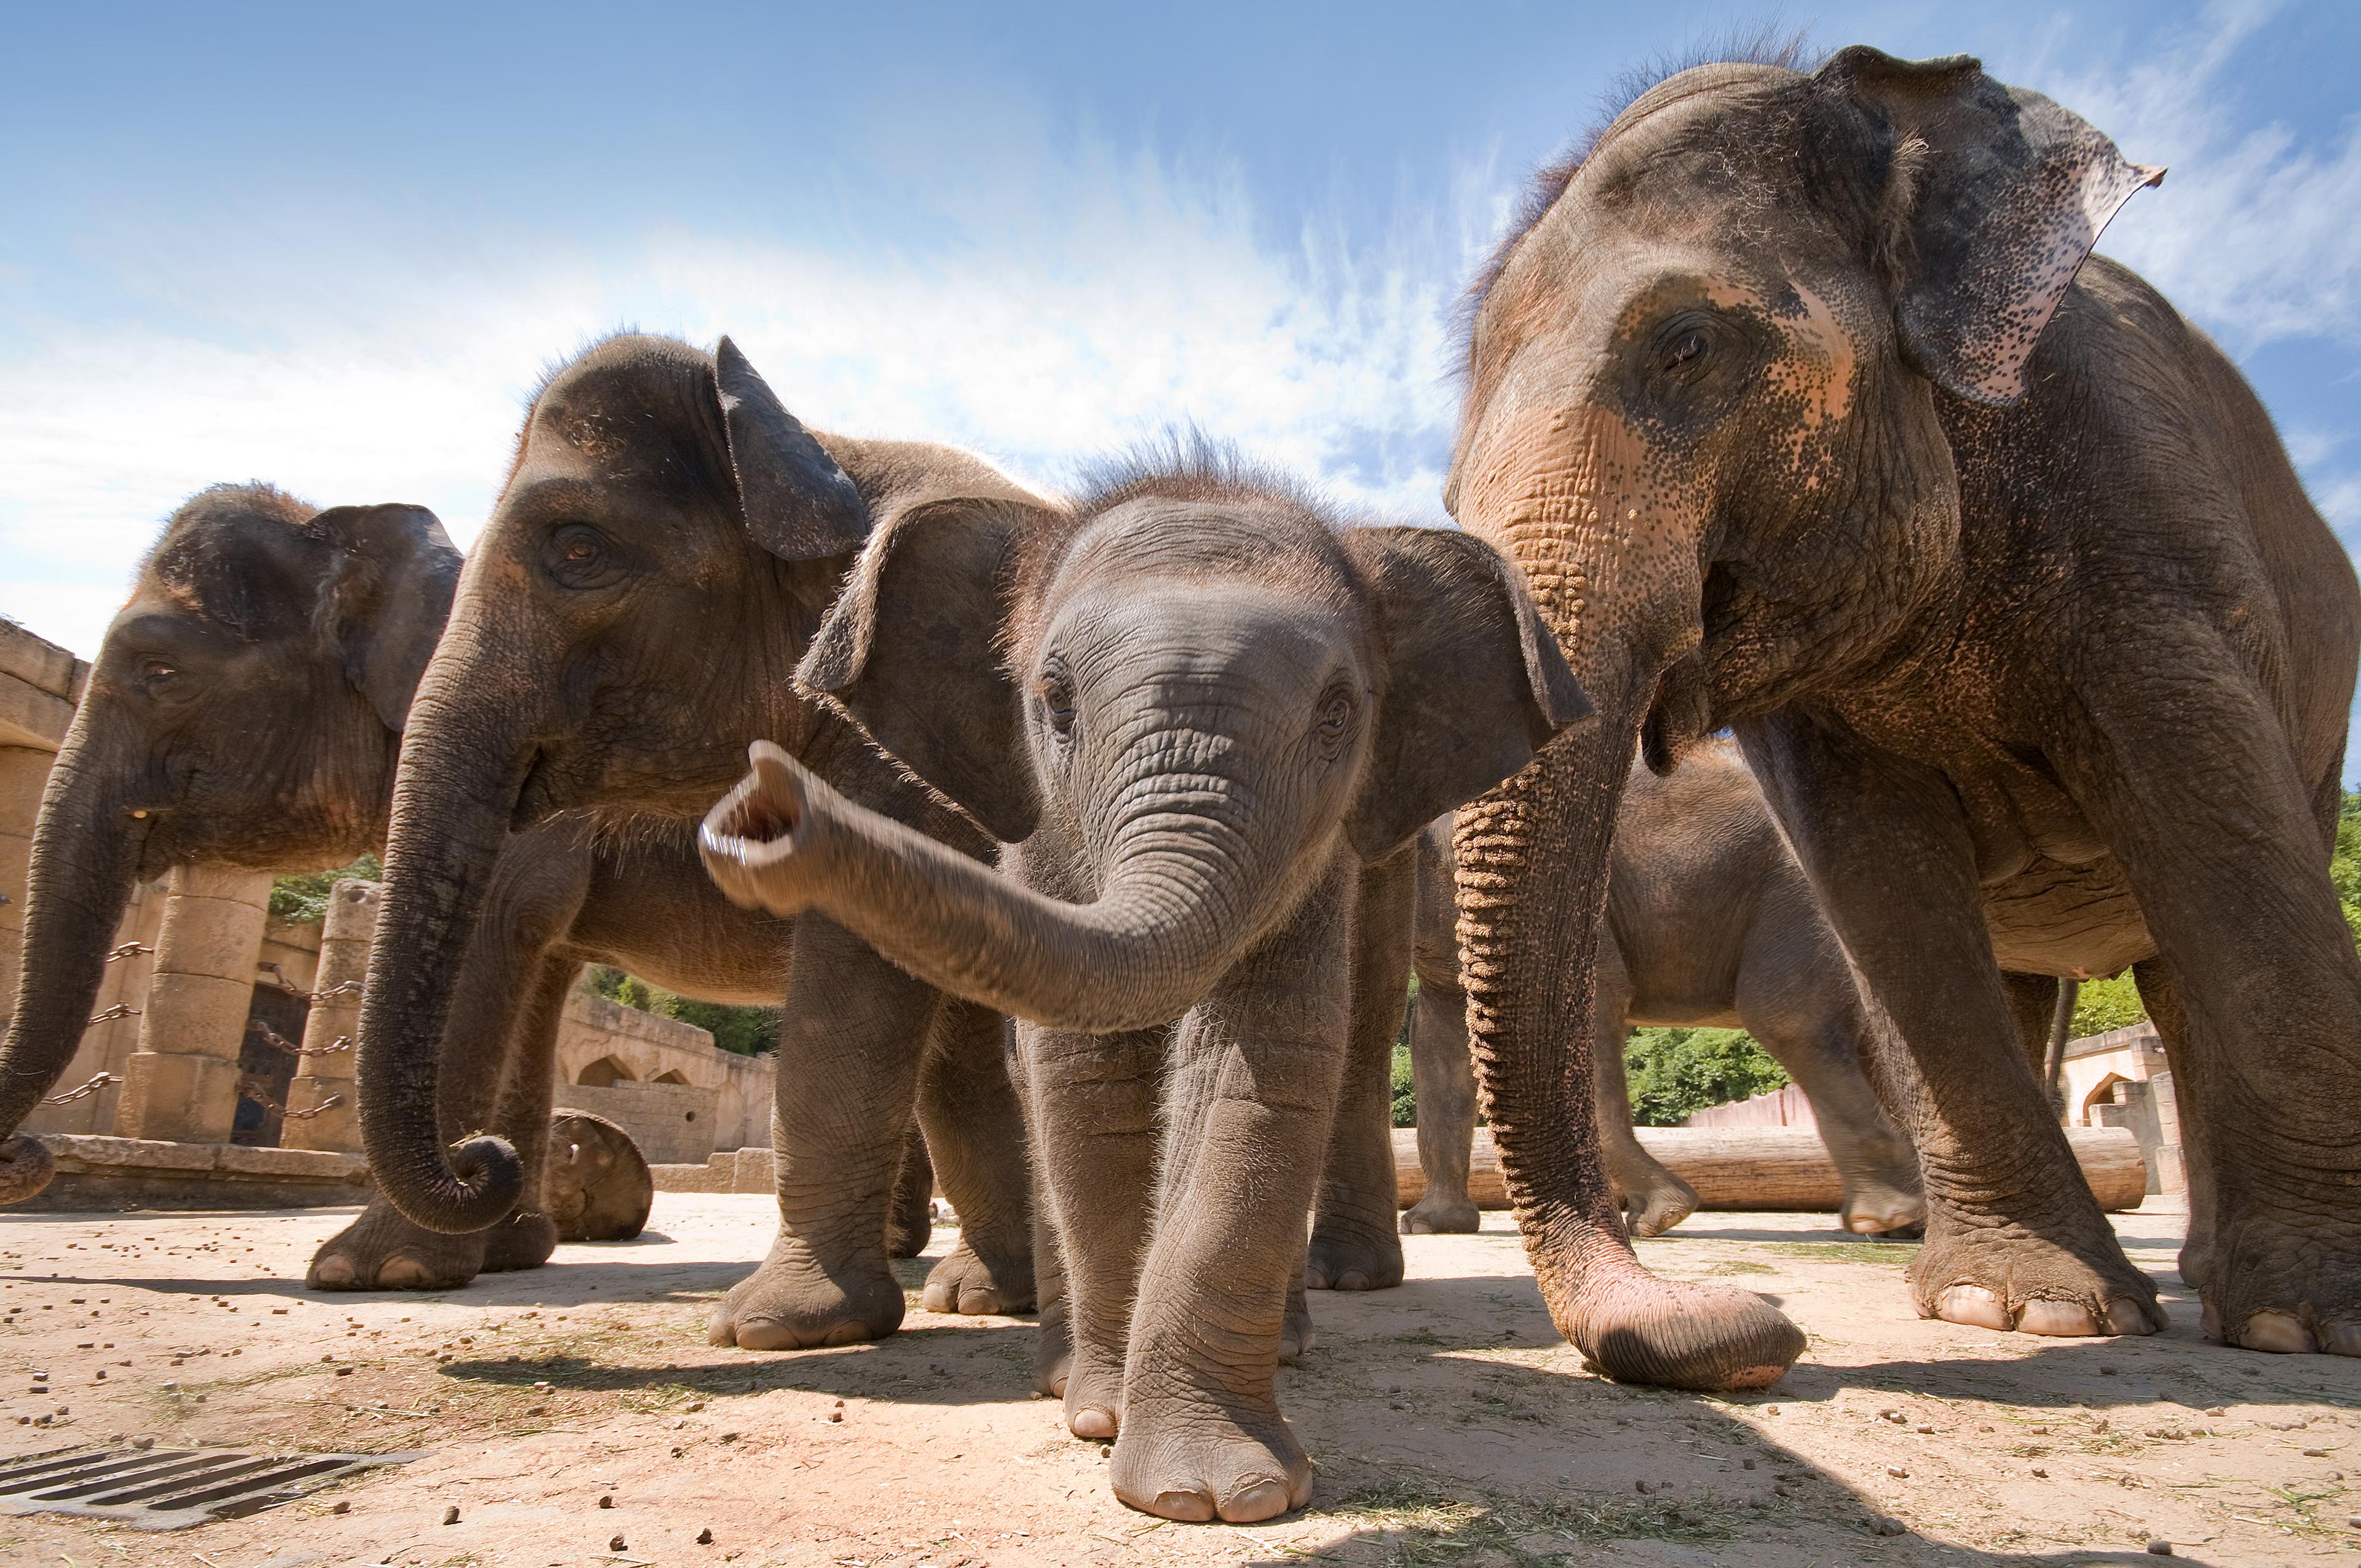 Elefanten ganz nah: Jungtier streckt neugierig den Rüssel aus